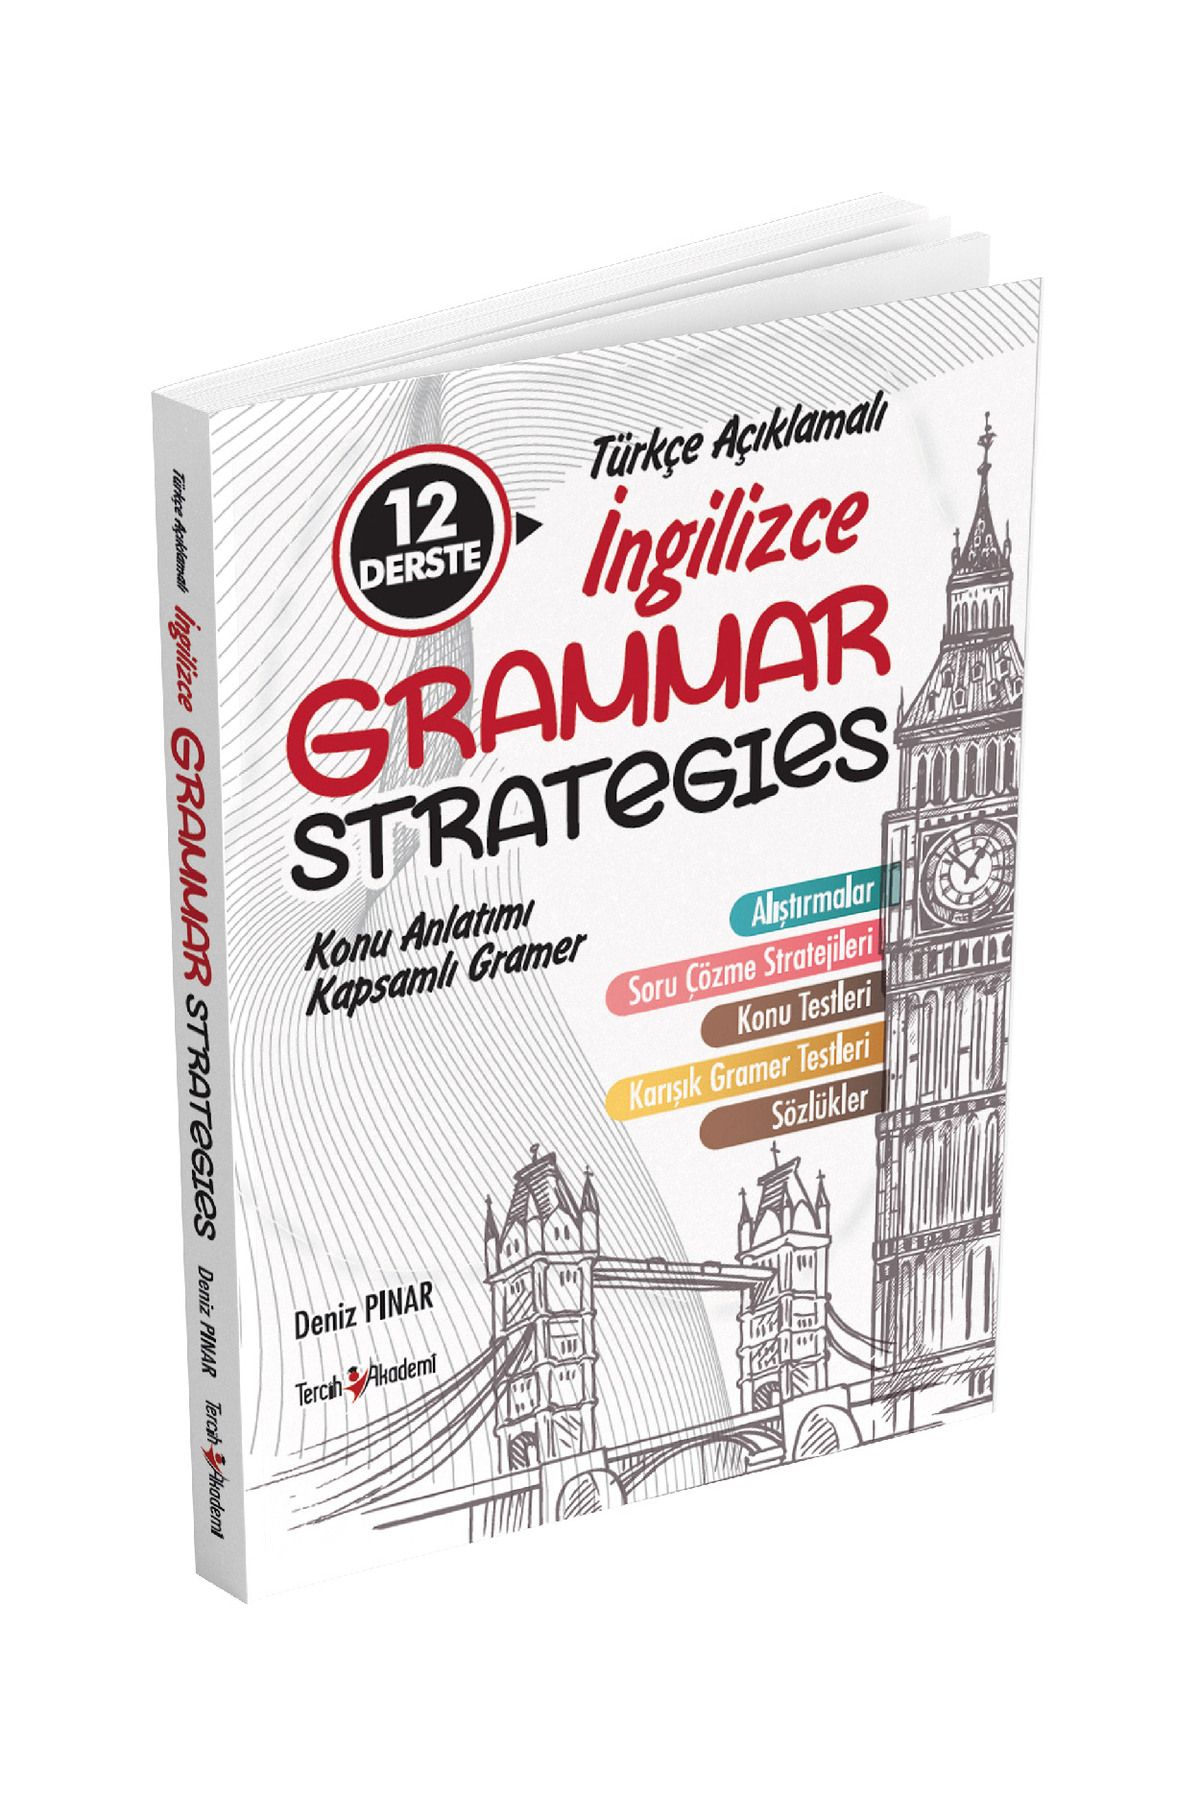 Tercih Akademi 12 Derste Türkçe Açıklamalı Ingilizce Grammar Strategıes Kapsamlı Konu Anlatımlı Ingilizce Gramer.